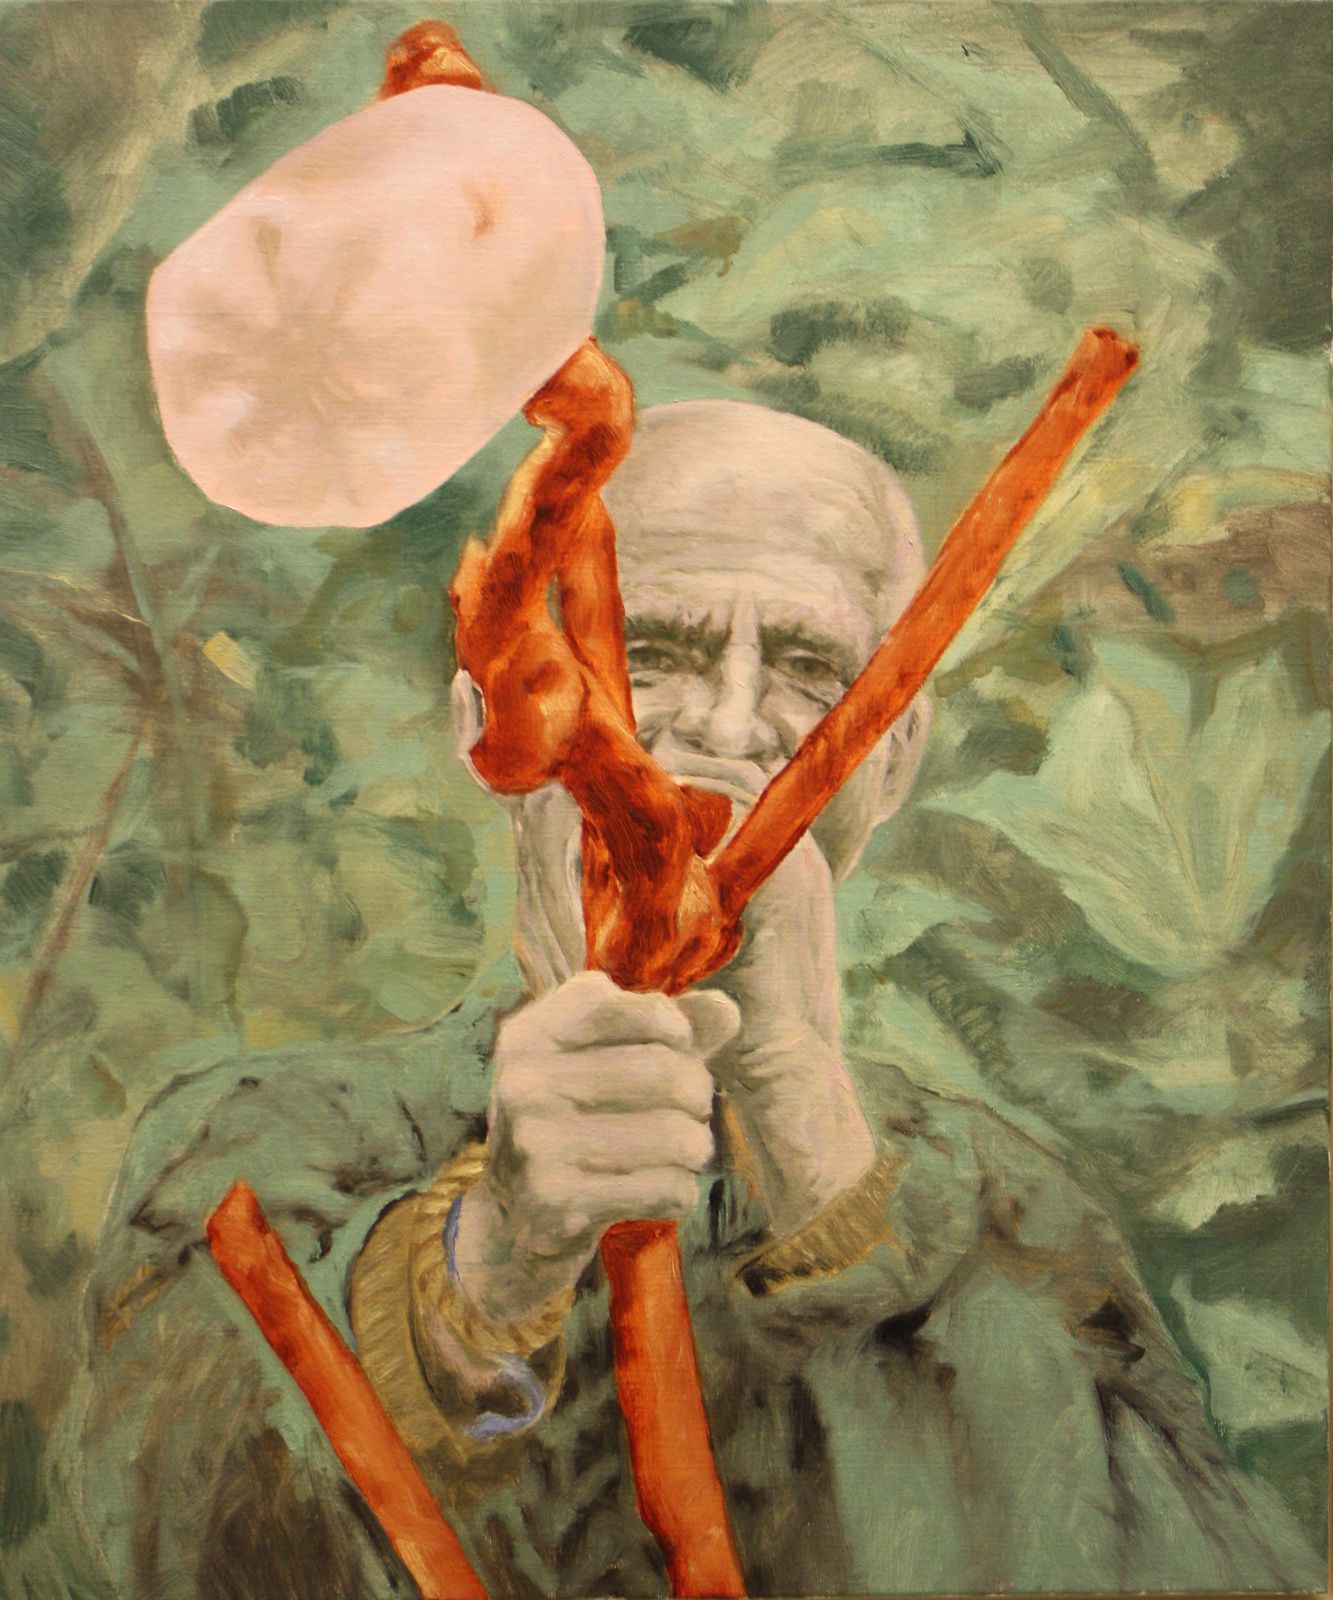 Exposition Peinture Contemporaine: Bruno PERRAMANT “Le Maître des anges rebelles” 